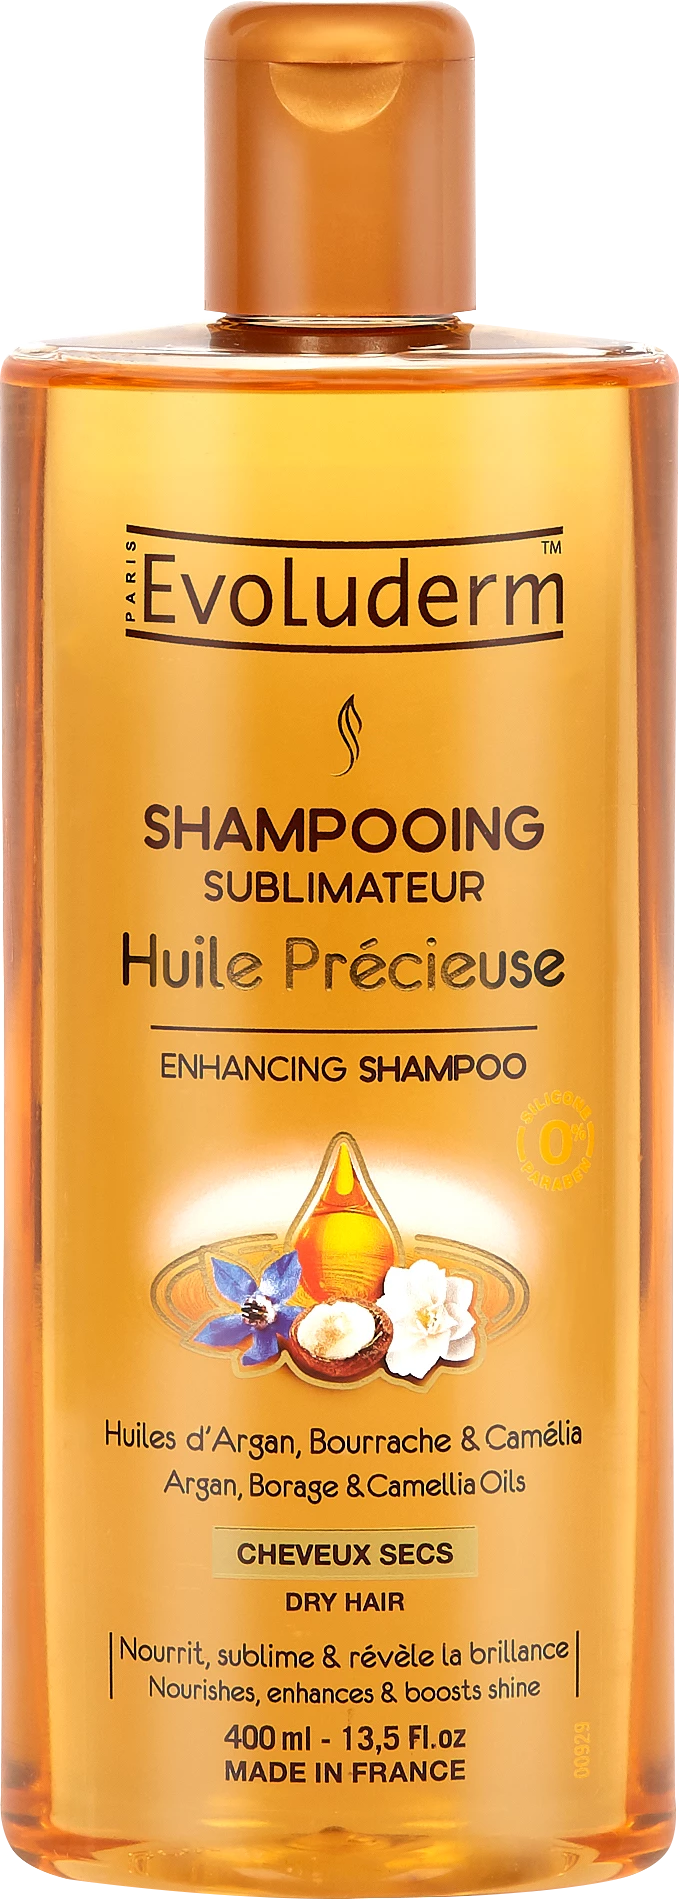 Precious Oil Shampoo, 400ml - EVOLUDERM